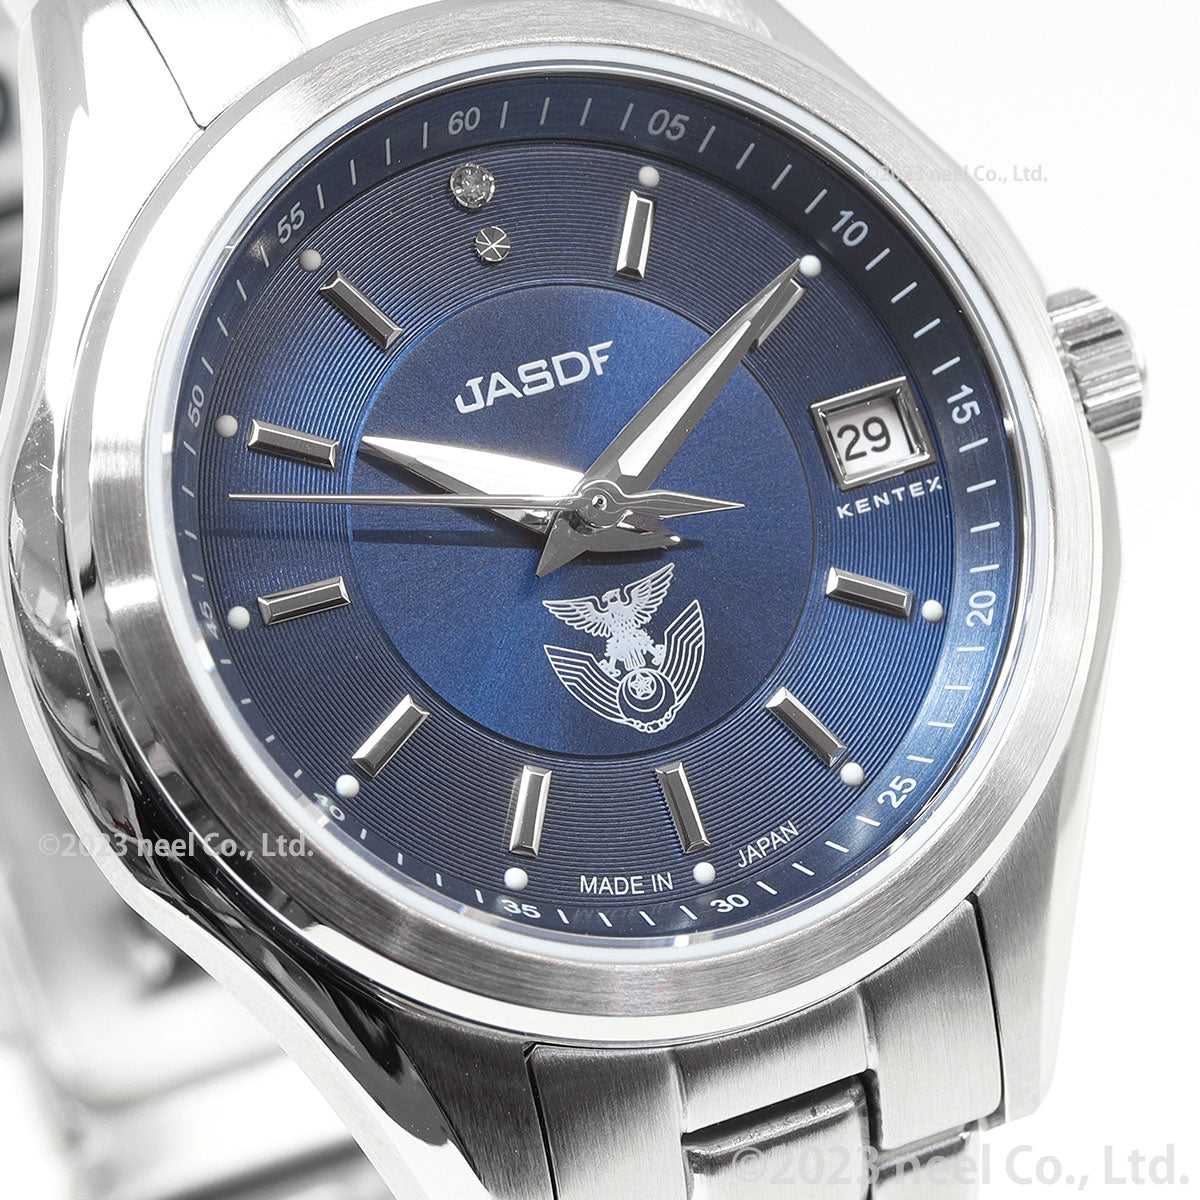 ケンテックス KENTEX JSDF 航空自衛隊モデル 腕時計 時計 レディース 日本製 S789L-2